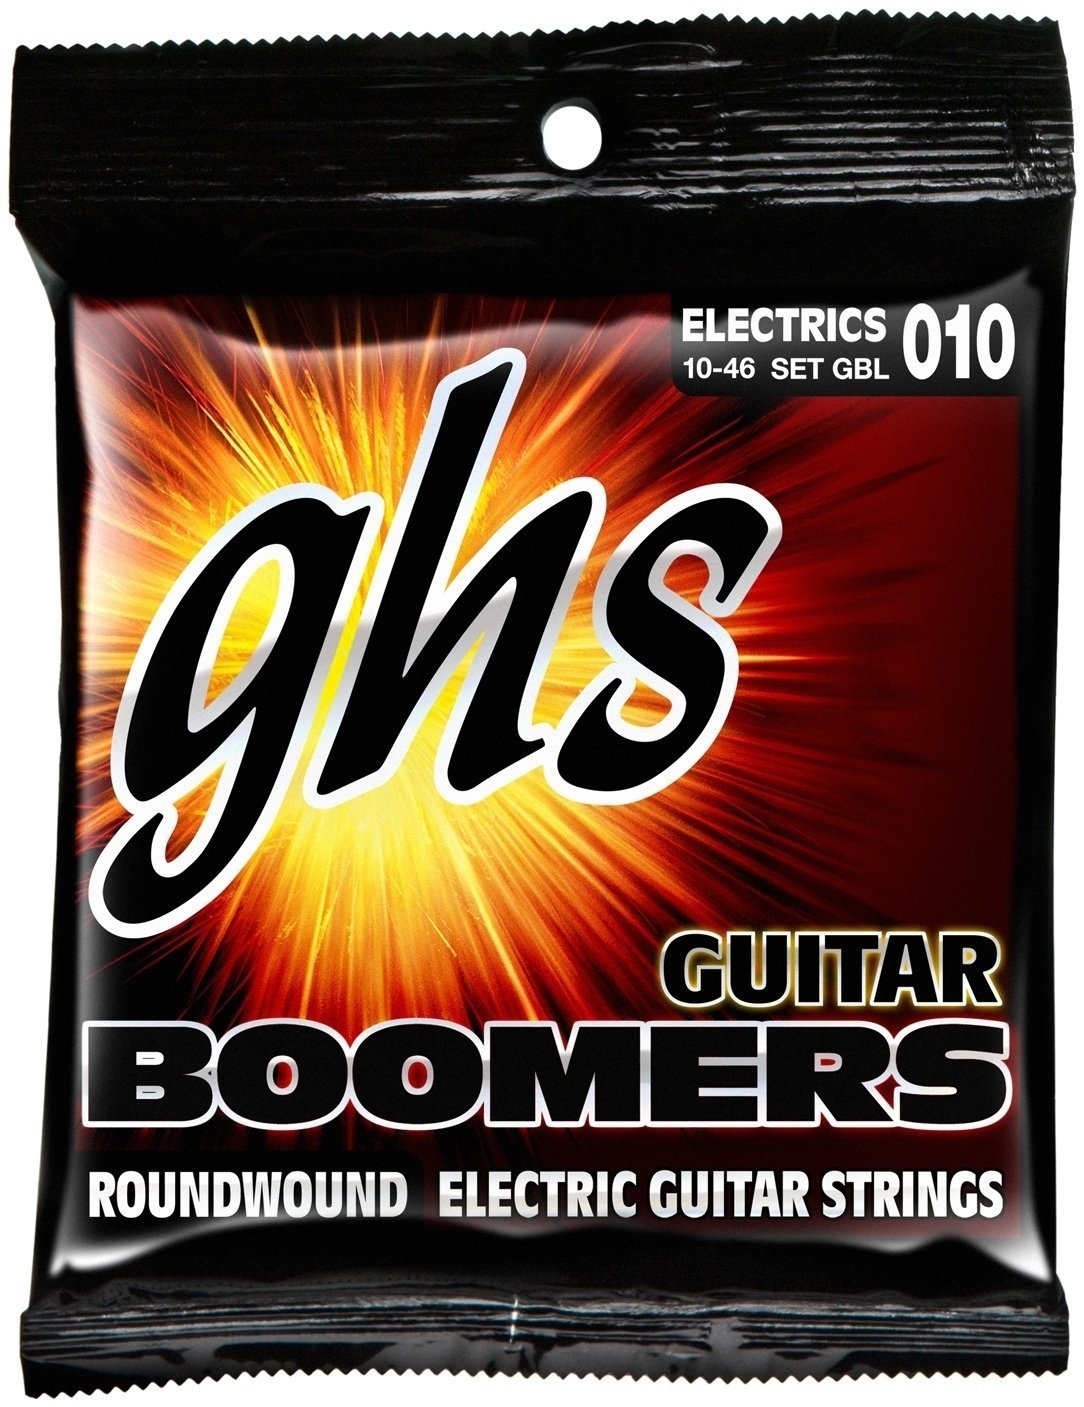 Struny pre elektrickú gitaru GHS Boomers Roundwound 10-46